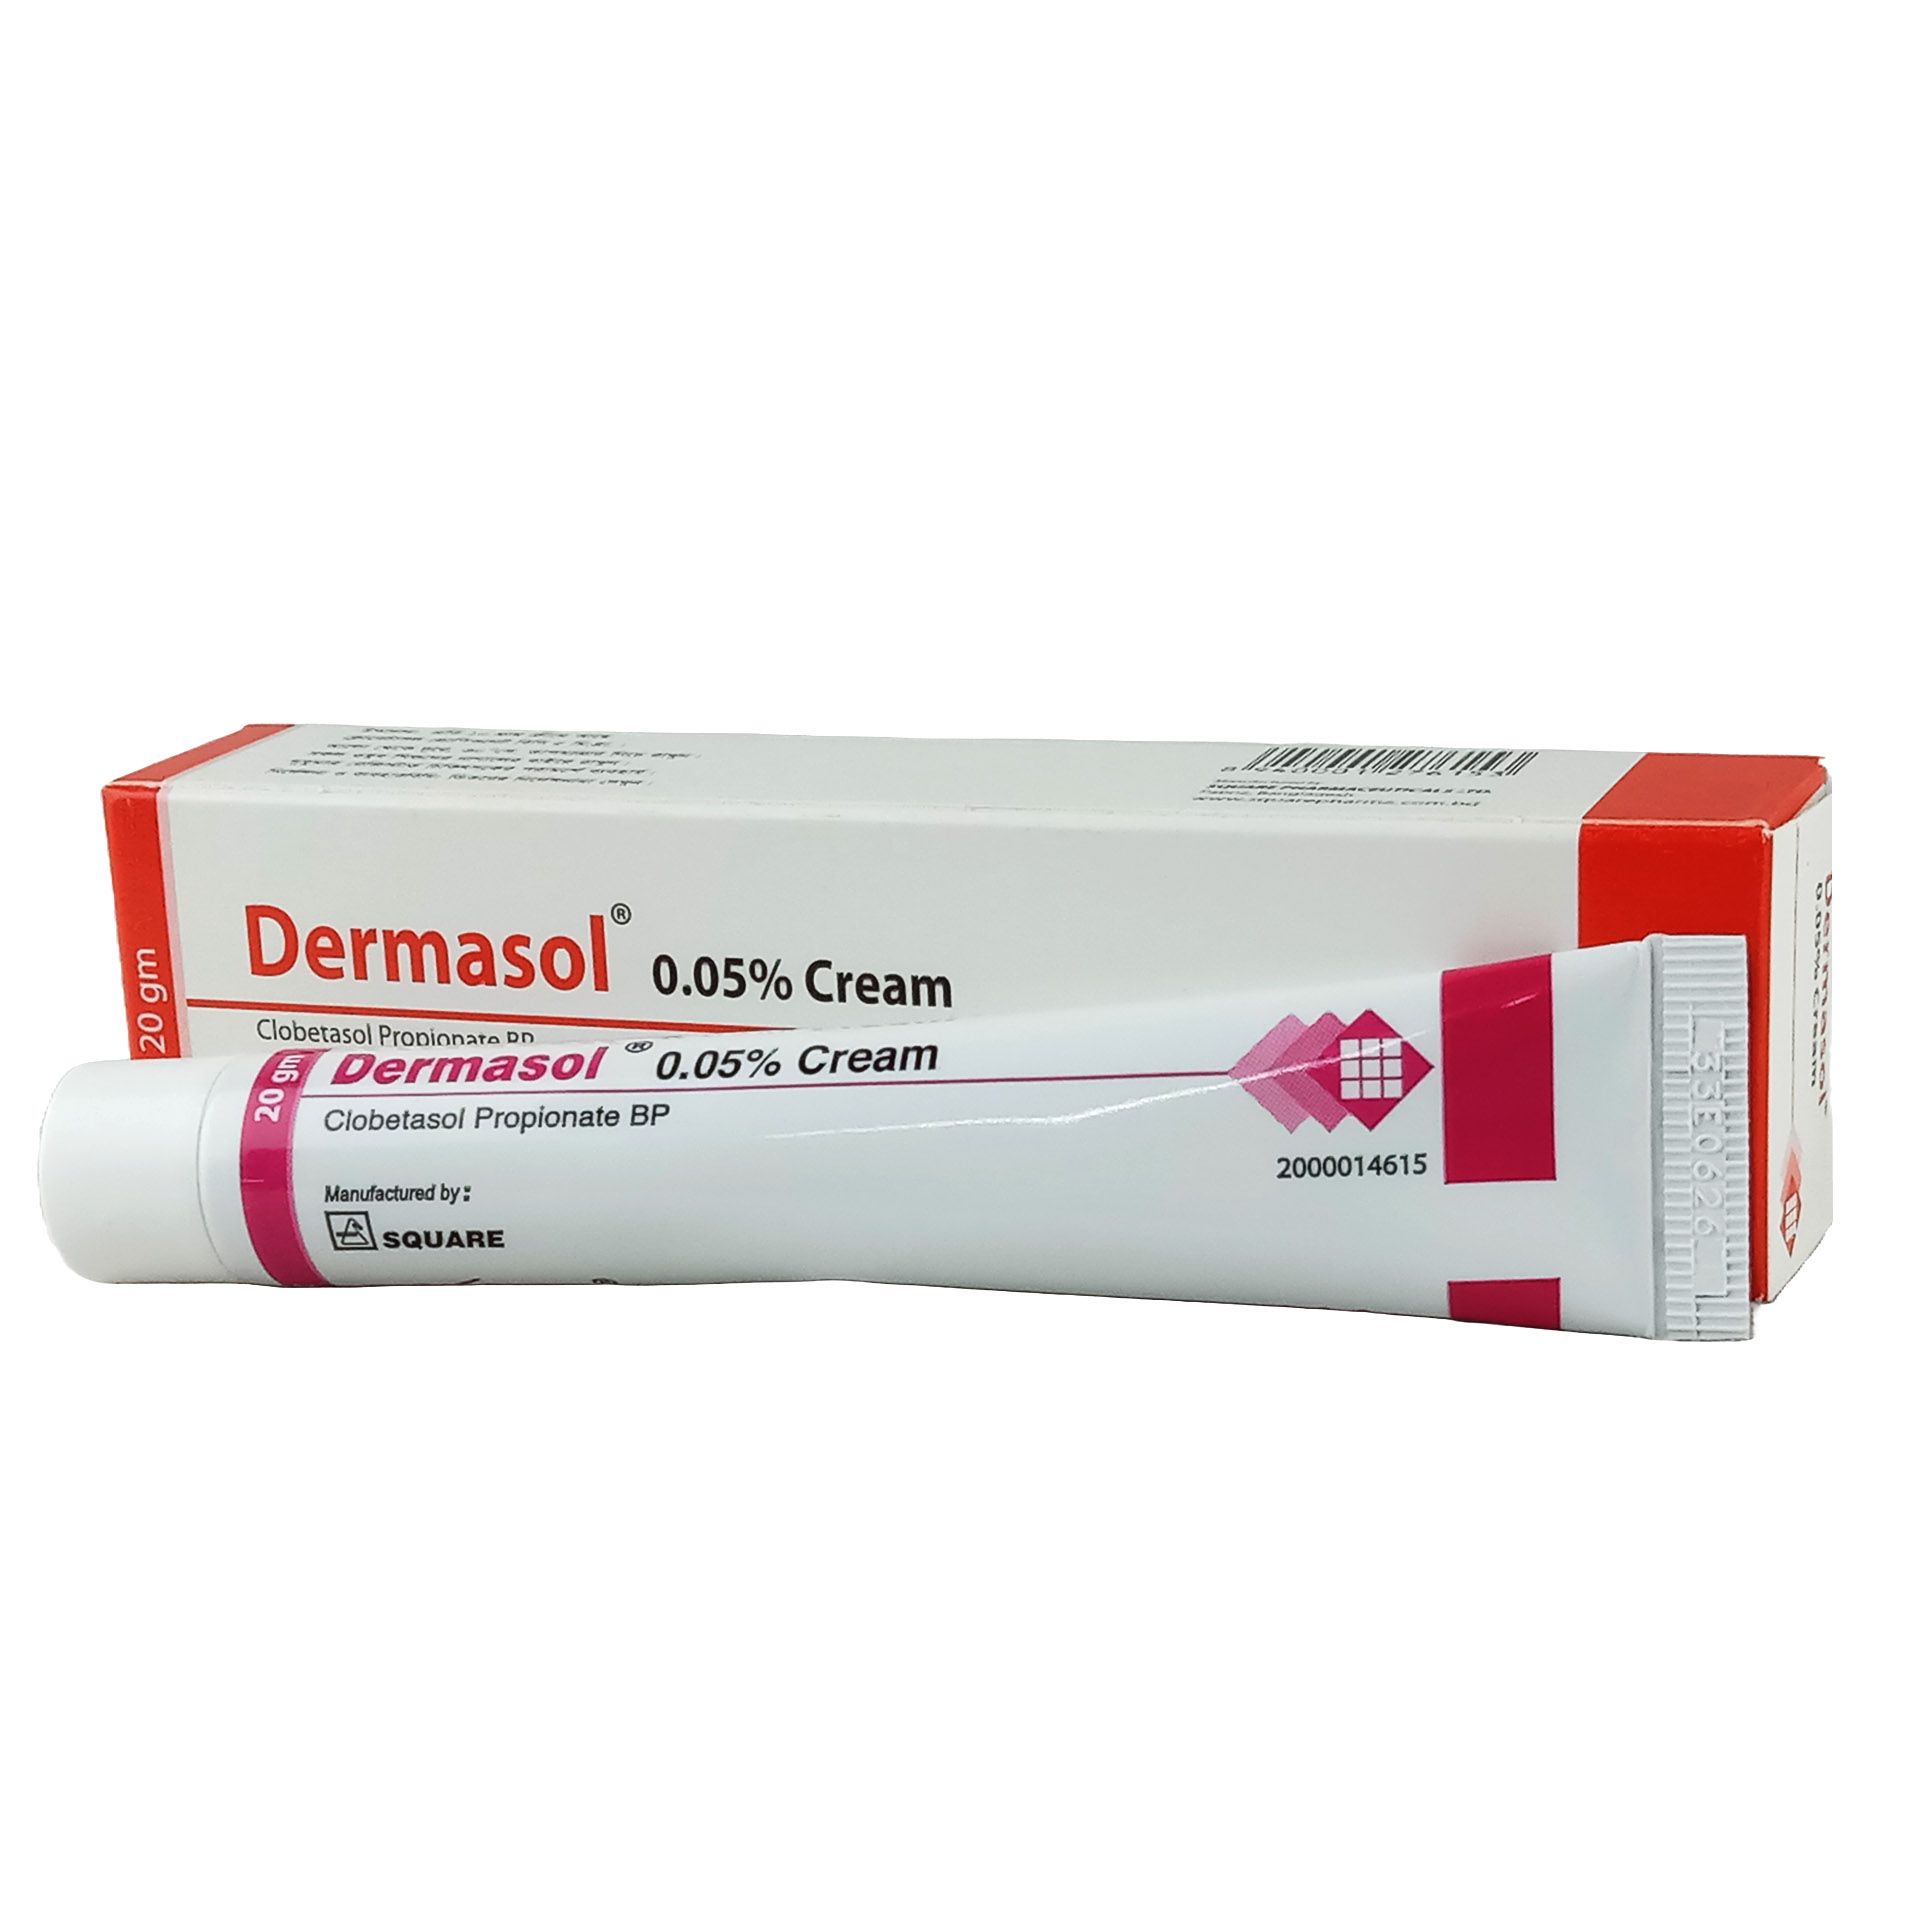 Dermasol Cream 0.05% Cream